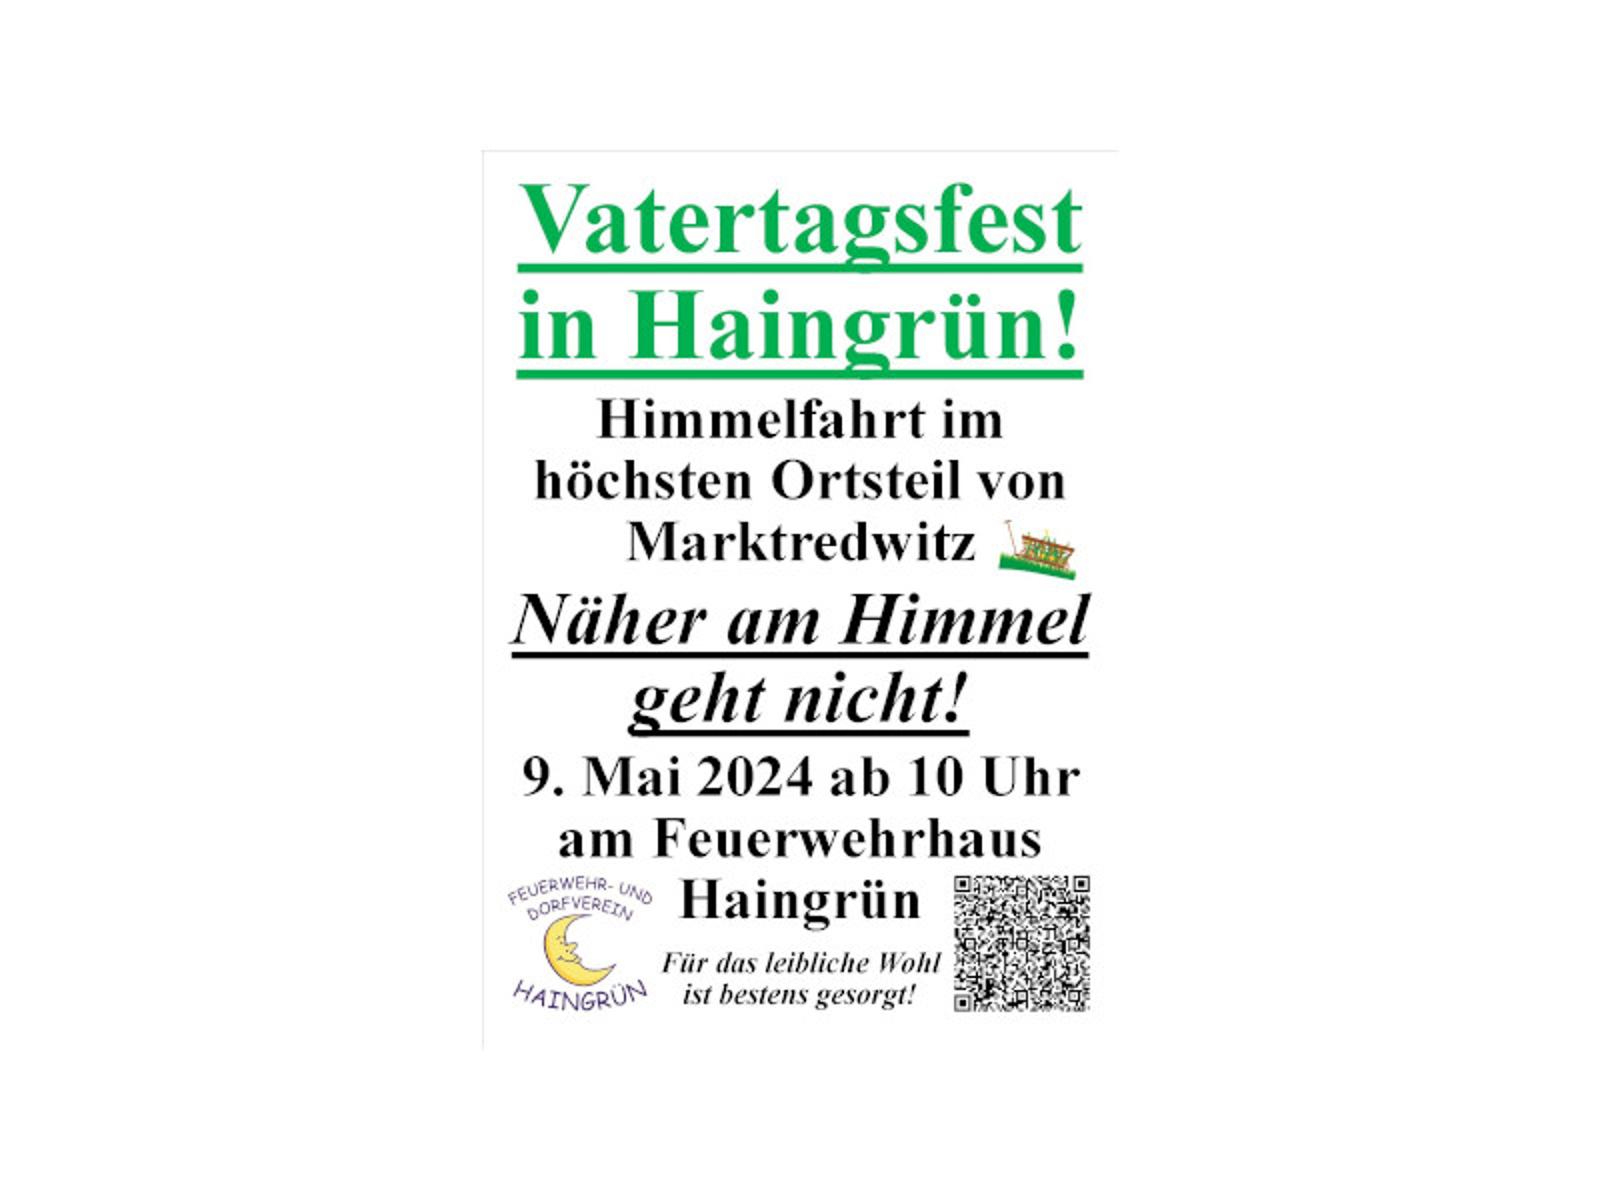 Vatertagsfest in Haingrün! An Himmelfahrt im höchsten Ortsteil von Marktredwitz. Näher am Himmel geht nicht! 9. Mai 2024 ab 10.00 Uhr am Feuerwehrhaus Haingrün